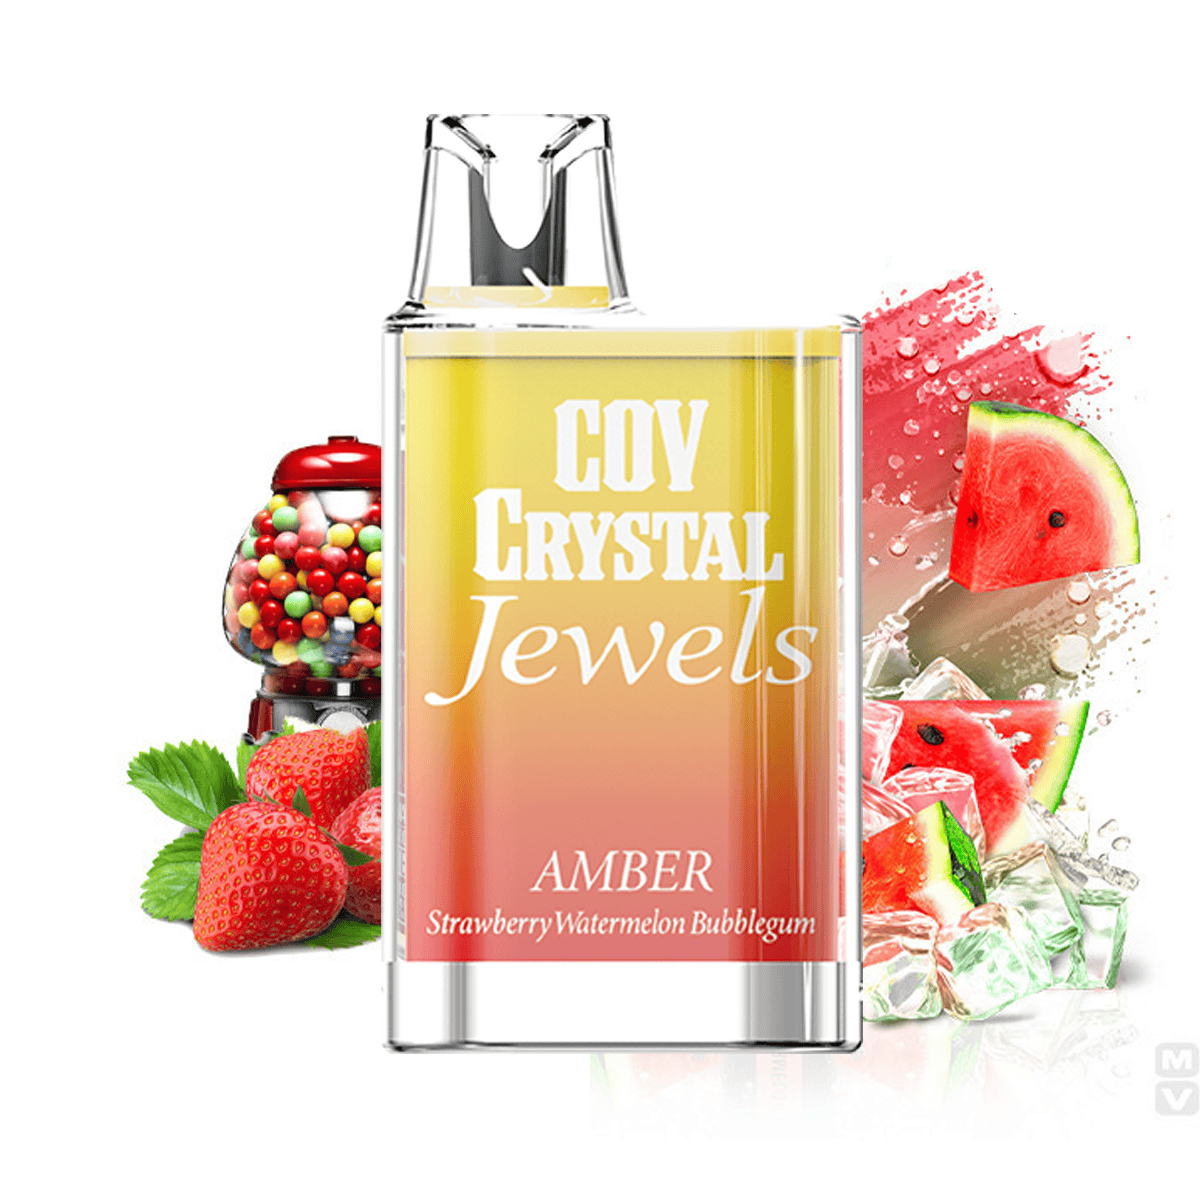 COV Crystal - Bubblegum Fraise Pastèque 20mg